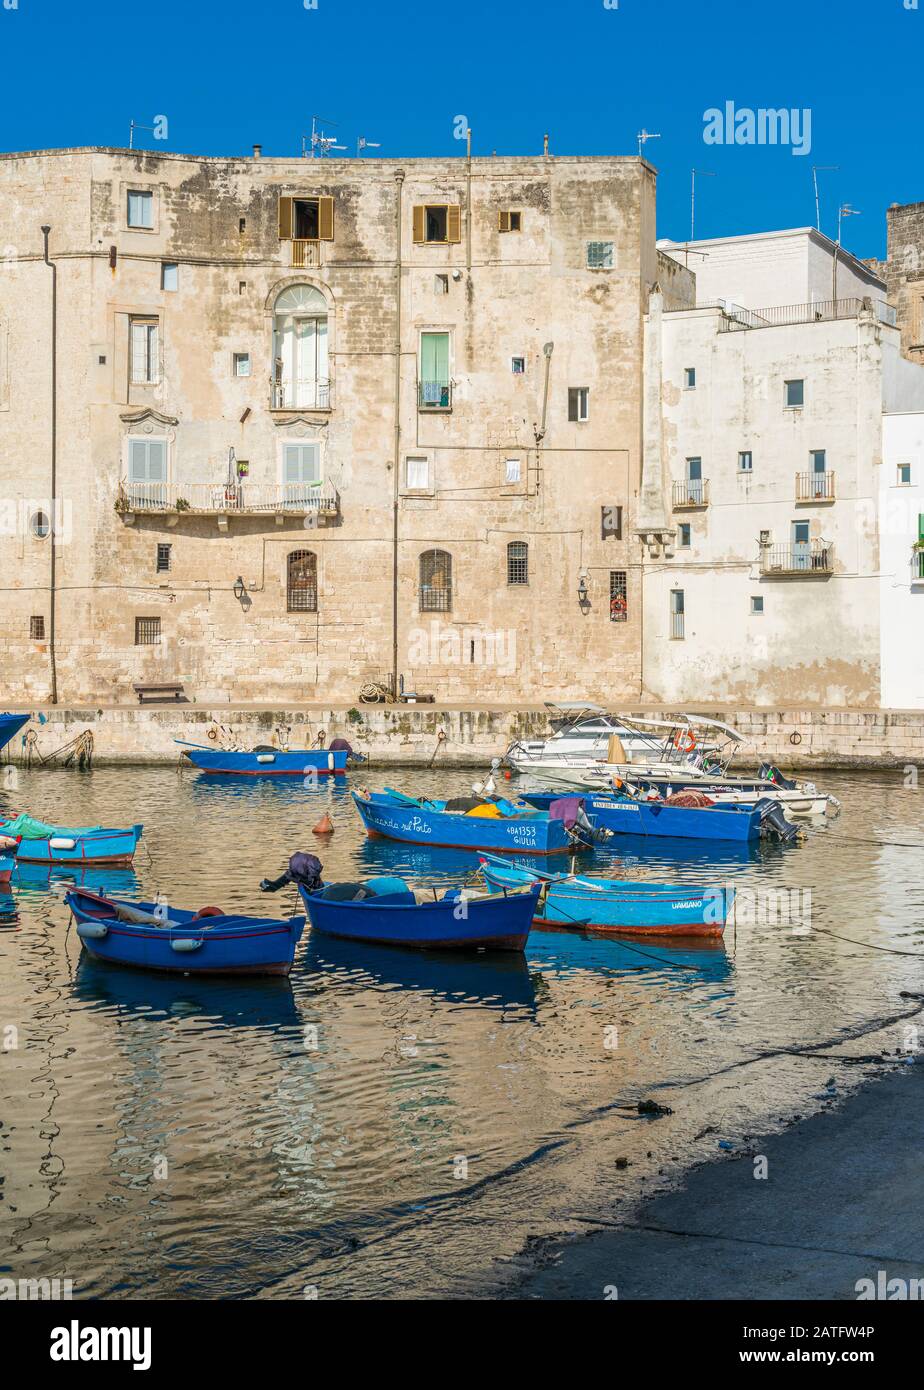 Monopoli und sein schöner alter Hafen, Provinz Bari, Apulien (Apulien), Süditalien. Stockfoto